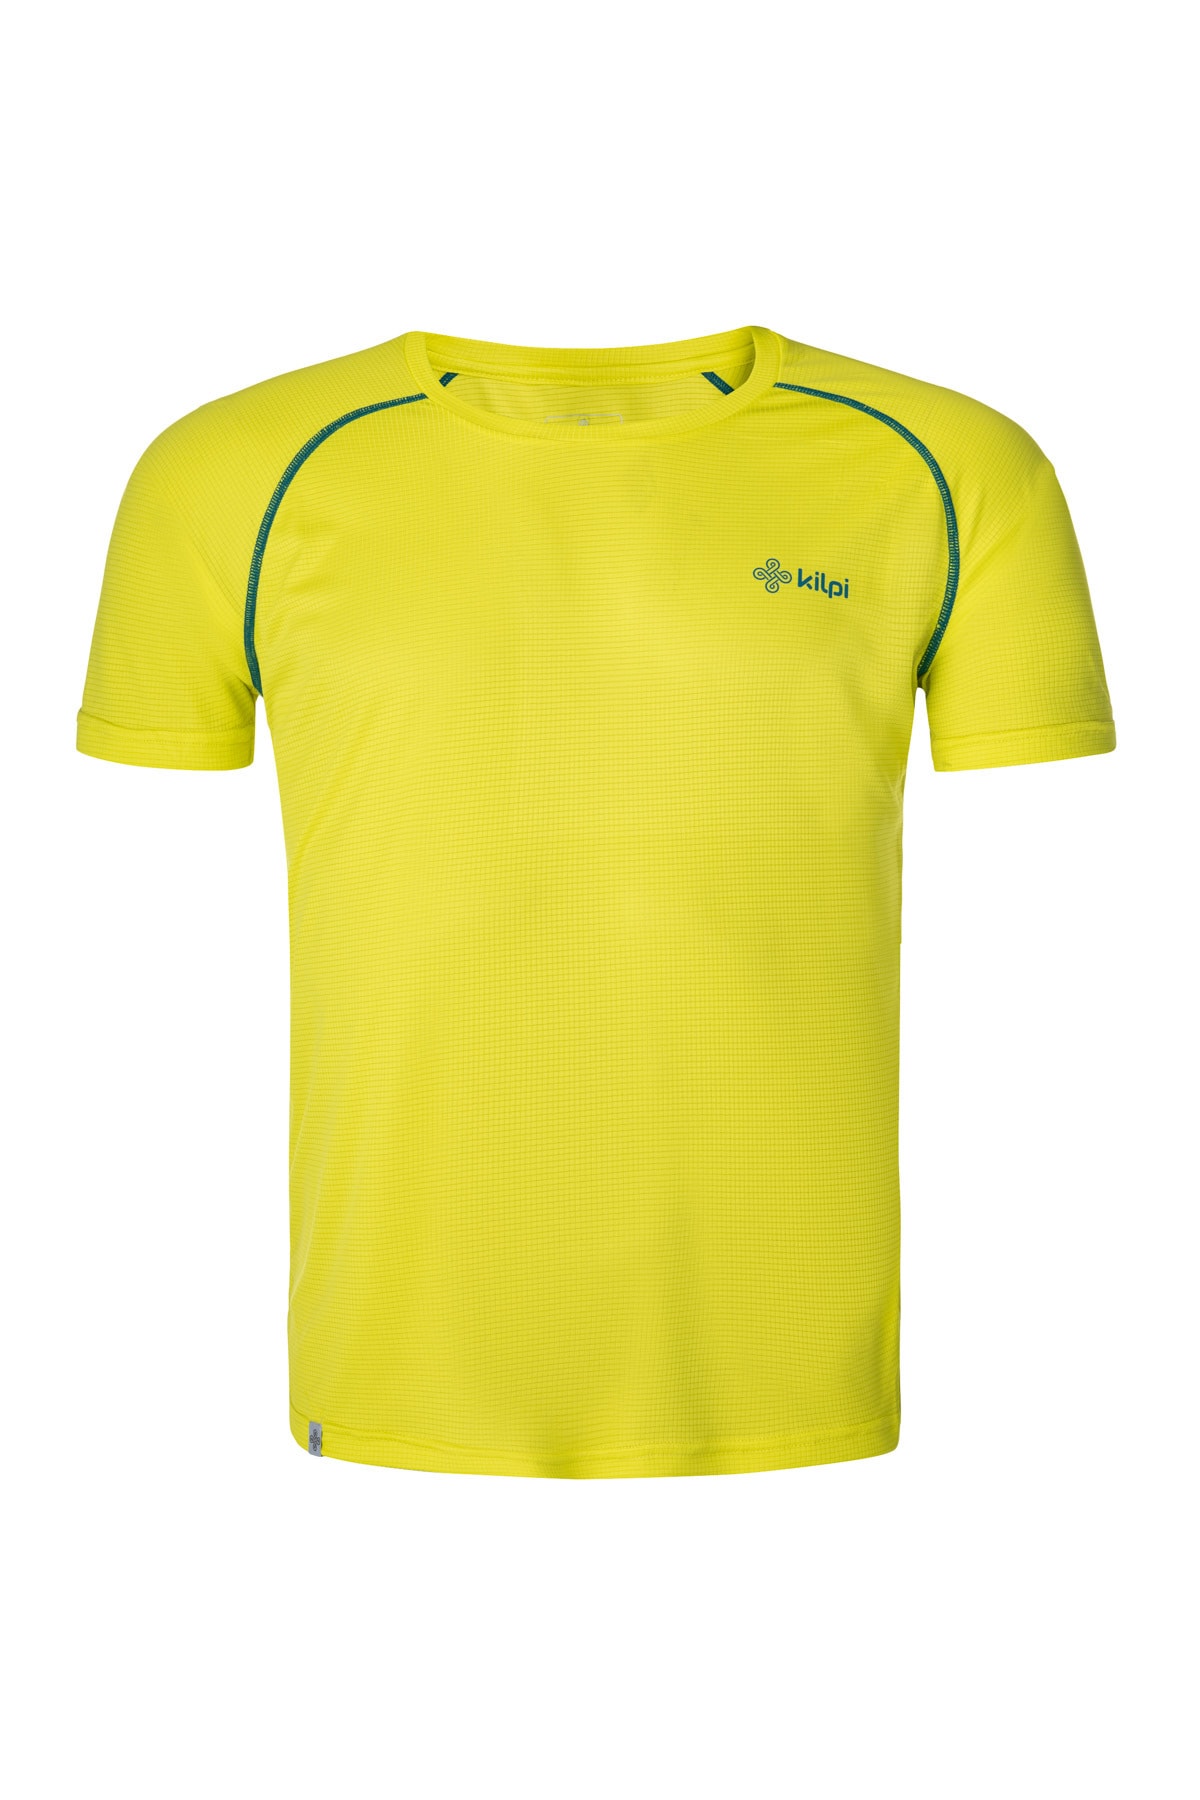 Kilpi T-Shirt Grün Regular Fit Fast ausverkauft